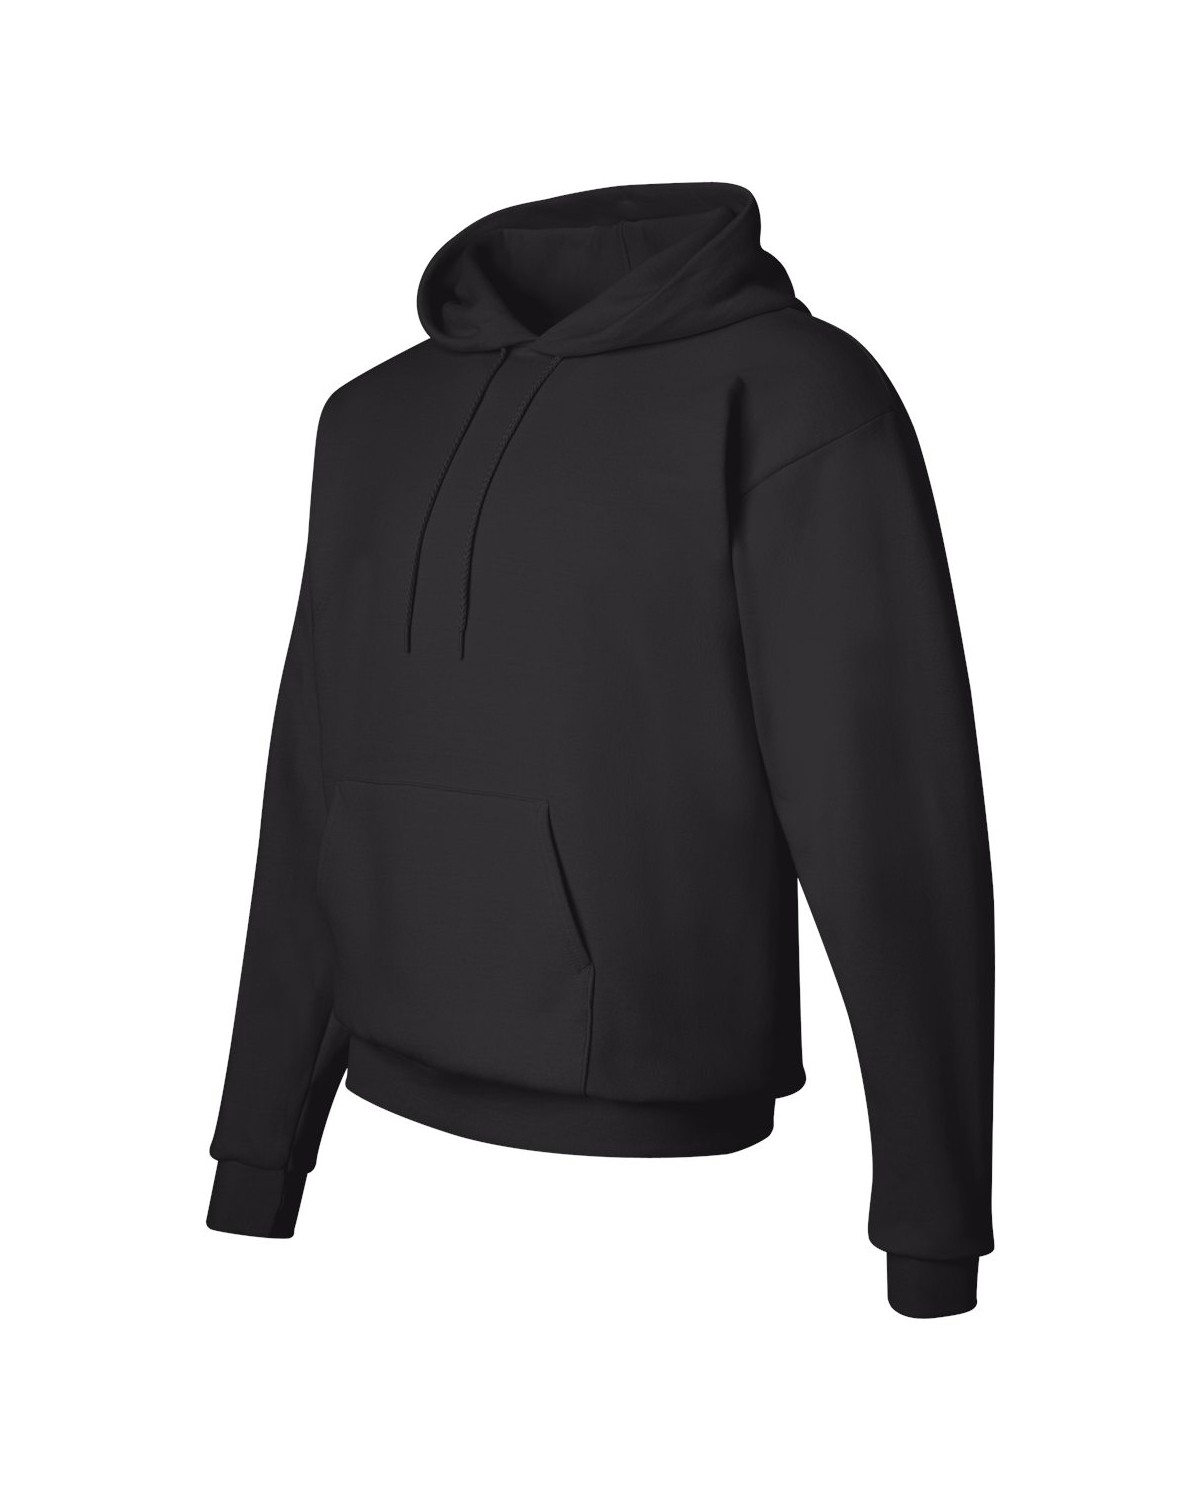 Hanes P170 Ecosmart Hooded Sweatshirt